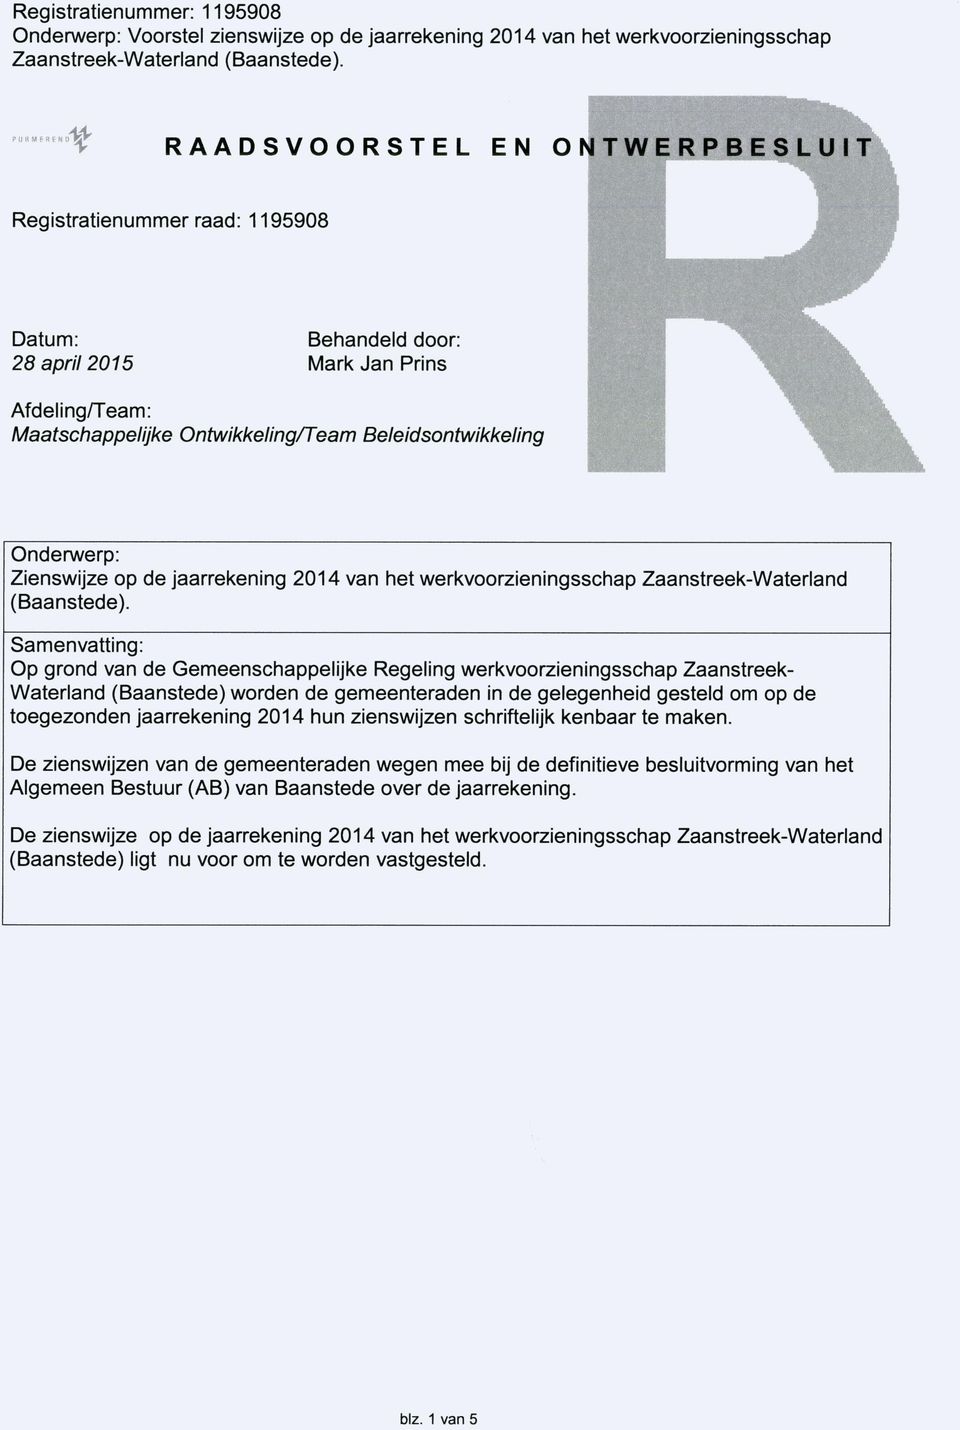 Samenvatting: Op grond van de Gemeenschappelijke Regeling werkvoorzieningsschap Zaanstreek- Waterland (Baanstede) worden de gemeenteraden in de gelegenheid gesteld om op de toegezonden jaarrekening